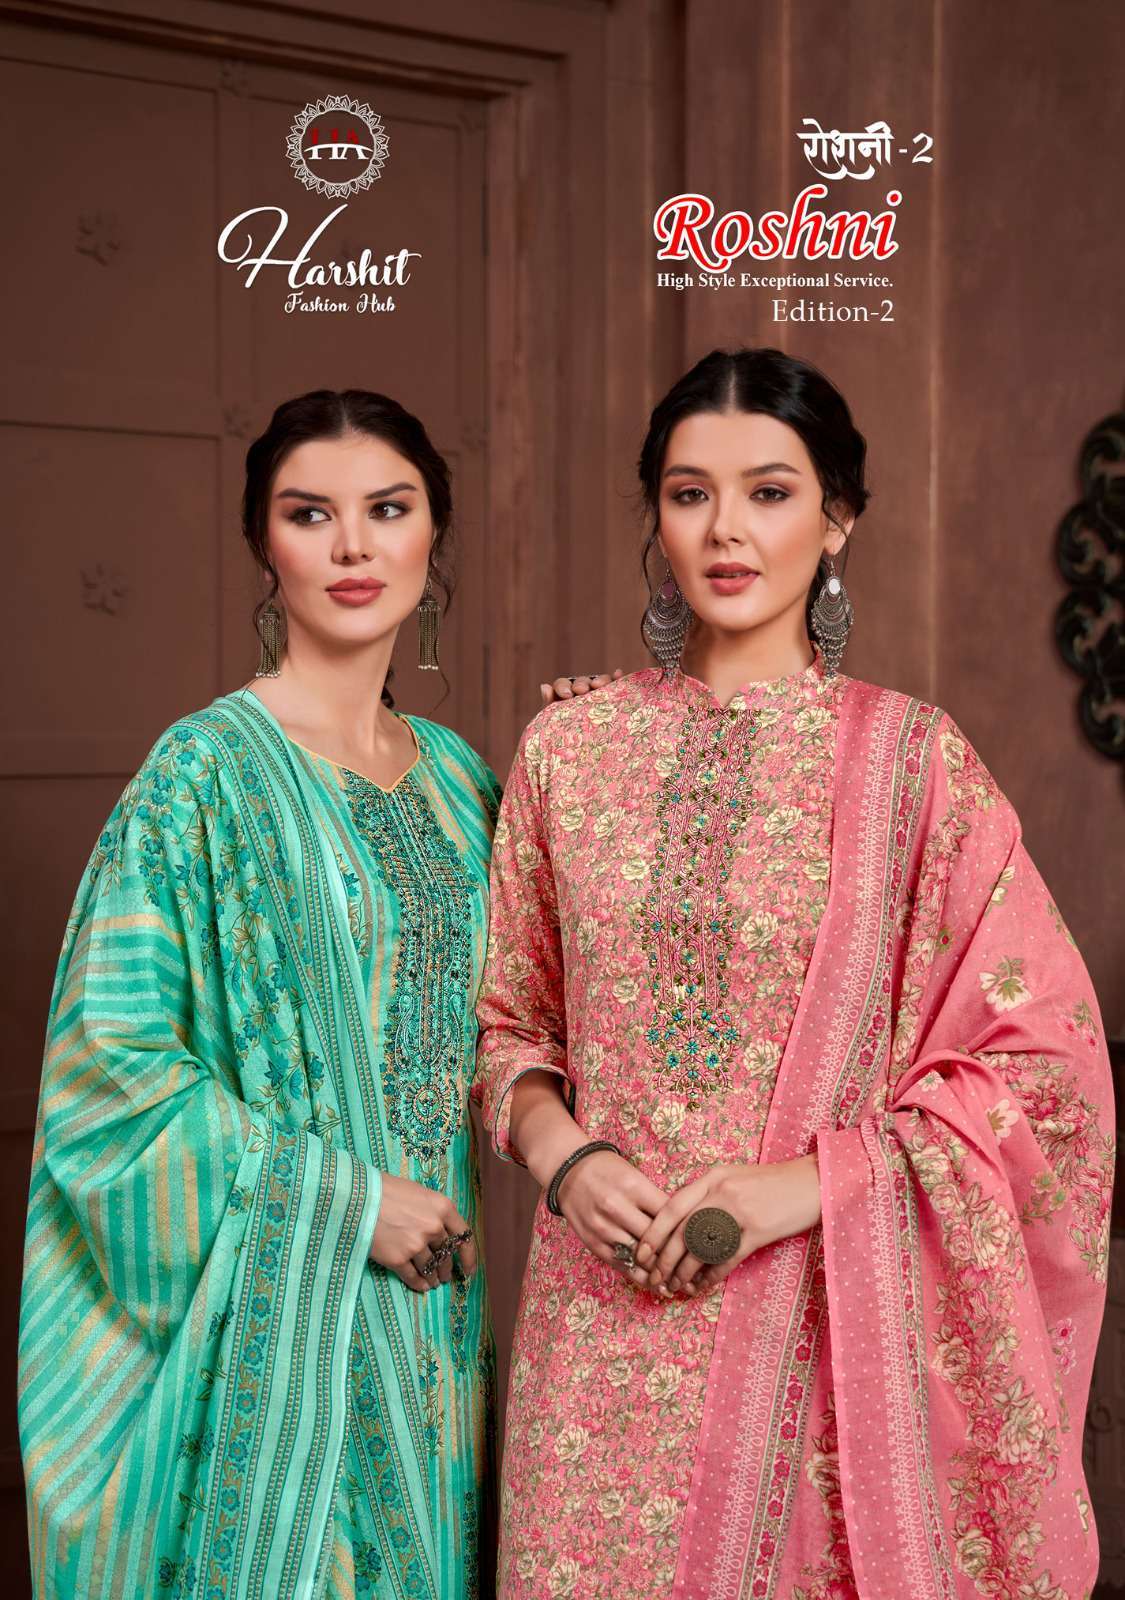 Harshit Roshni Edition 2 Exclusive Fancy Cotton Suit Online Dealers